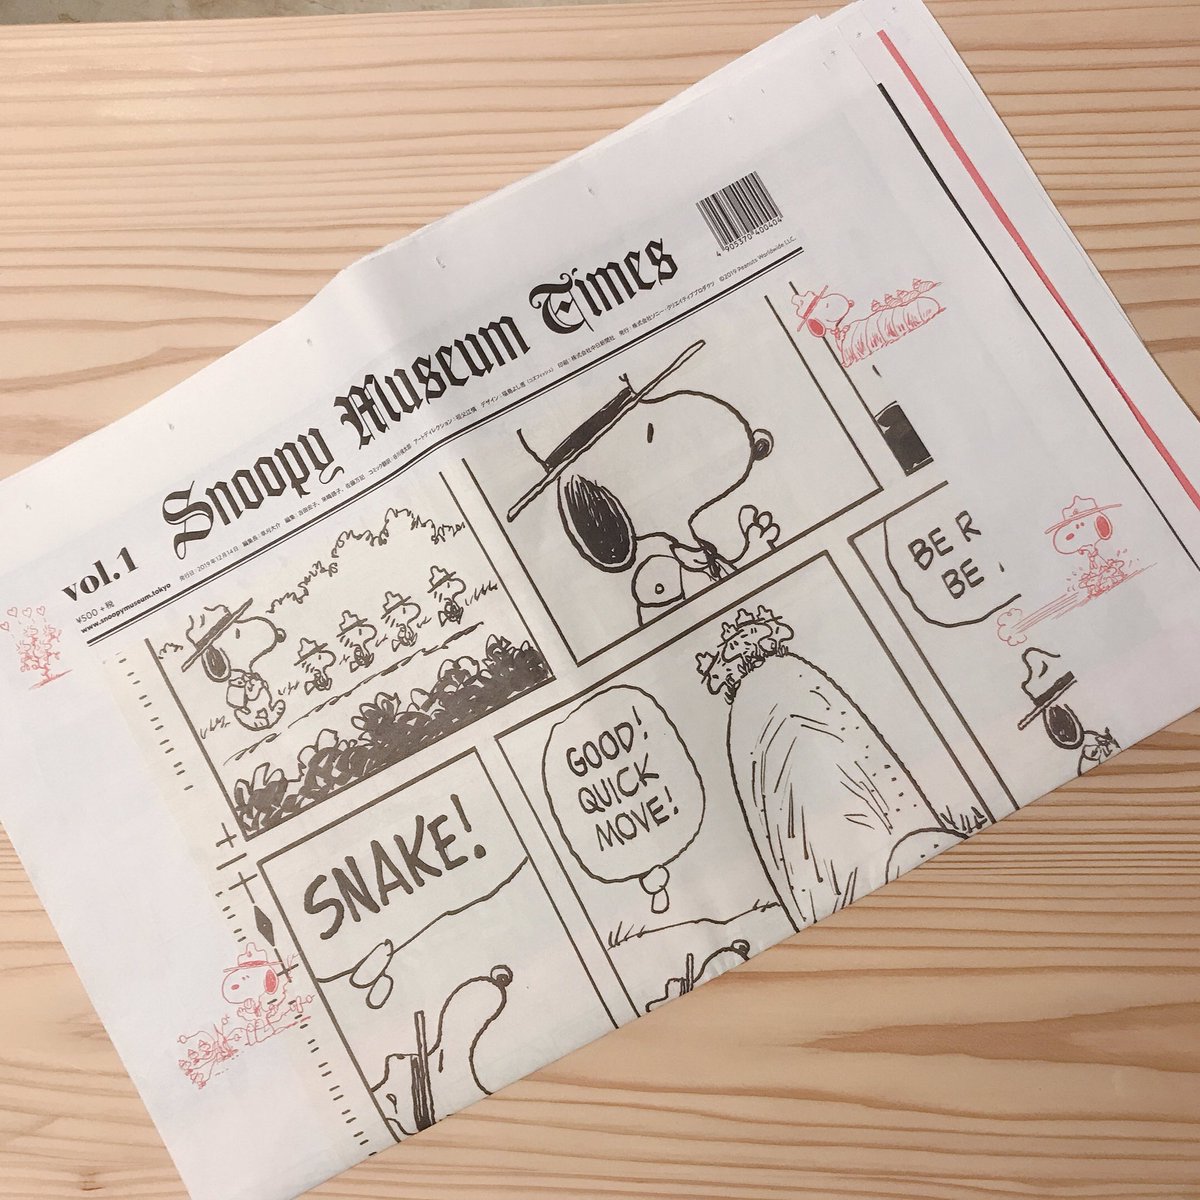 Snoopy Museum Tokyo ミュージアムより 新聞が完成しました 新しいスヌーピーミュージアム の情報が満載の新聞が刷りあがりました 六本木では展覧会ごとに図録を販売していましたが 今回は新聞です